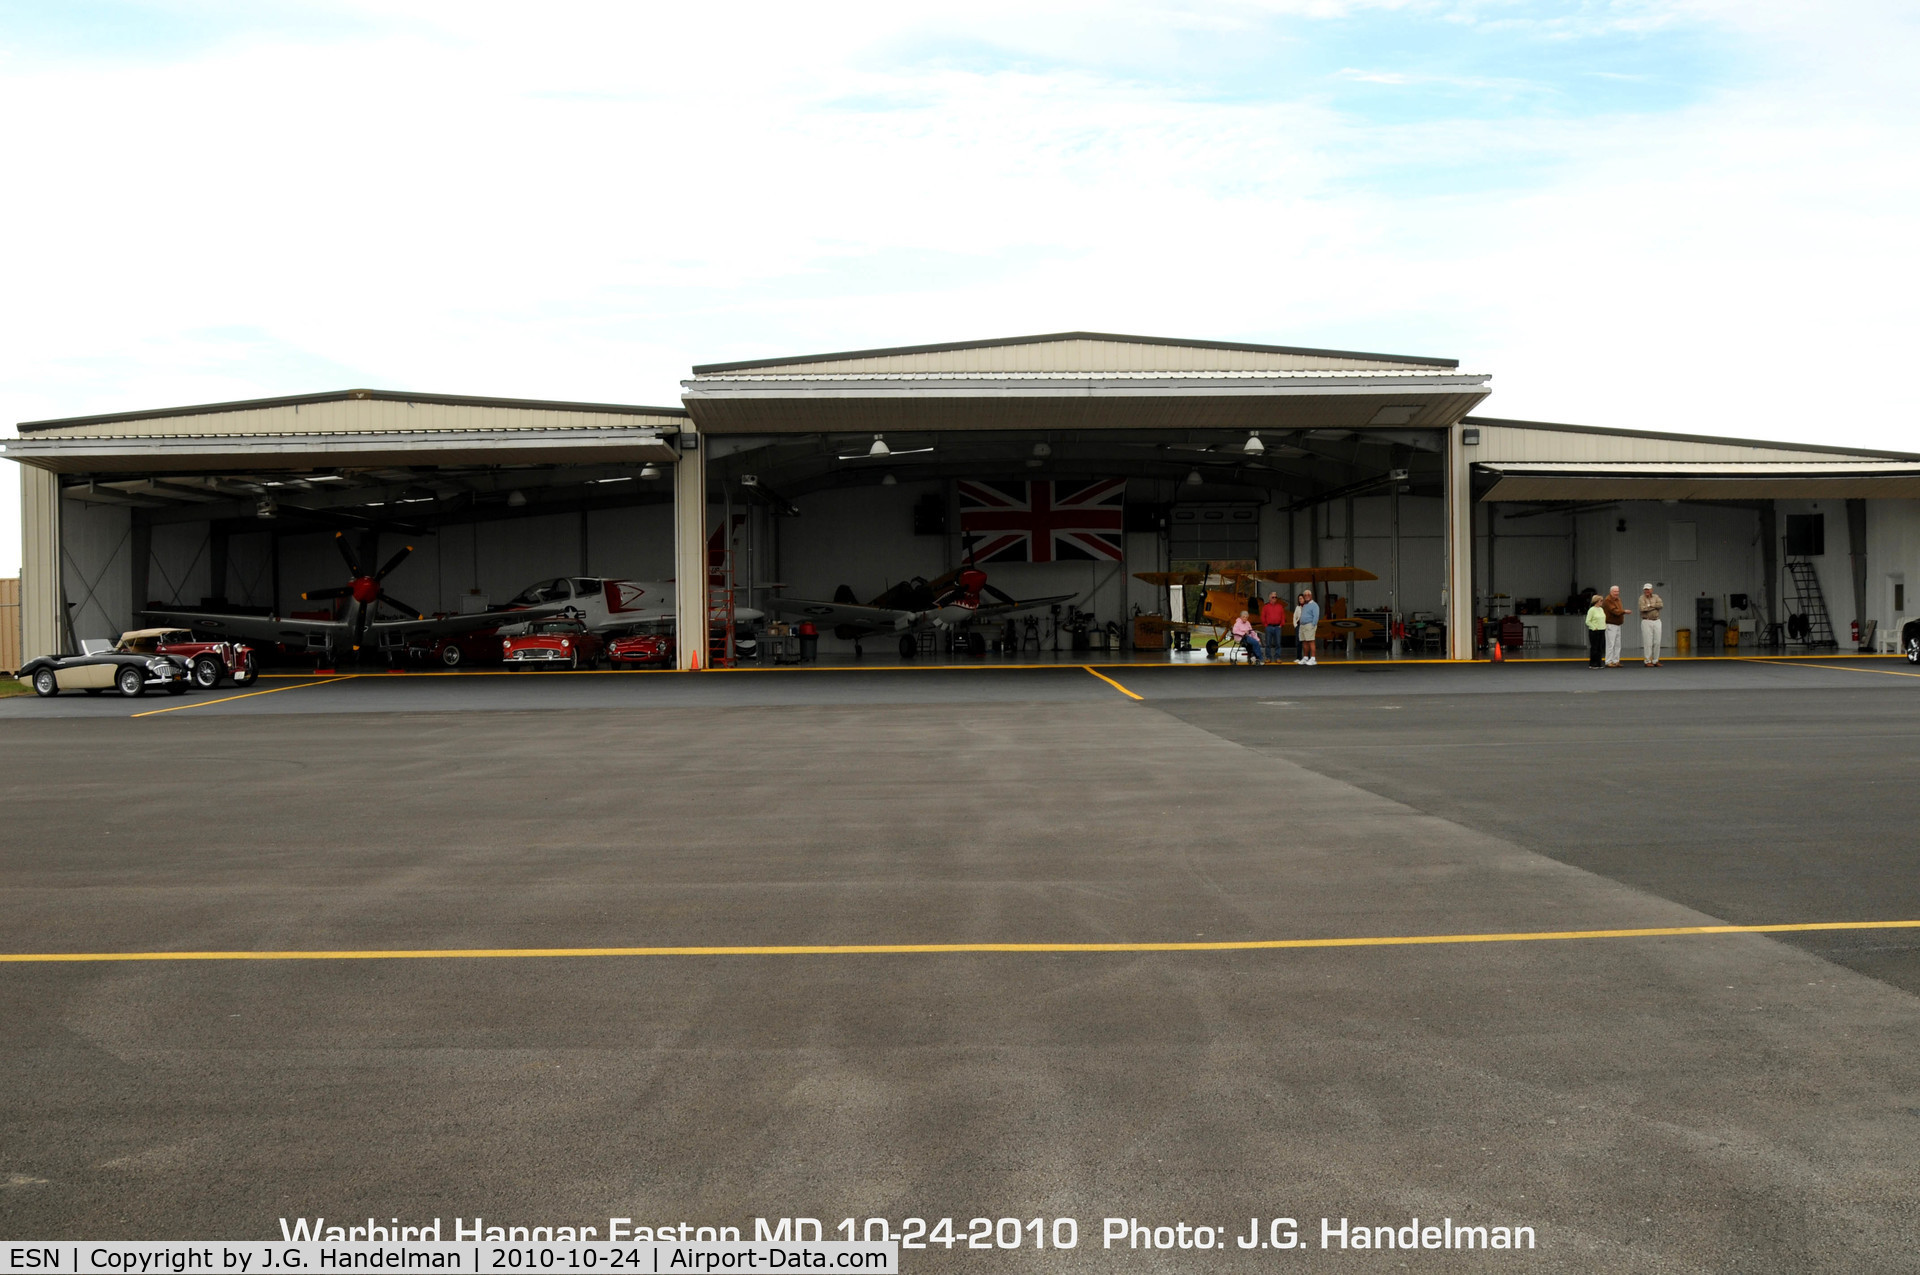 Easton/newnam Field Airport (ESN) - warbird hangar